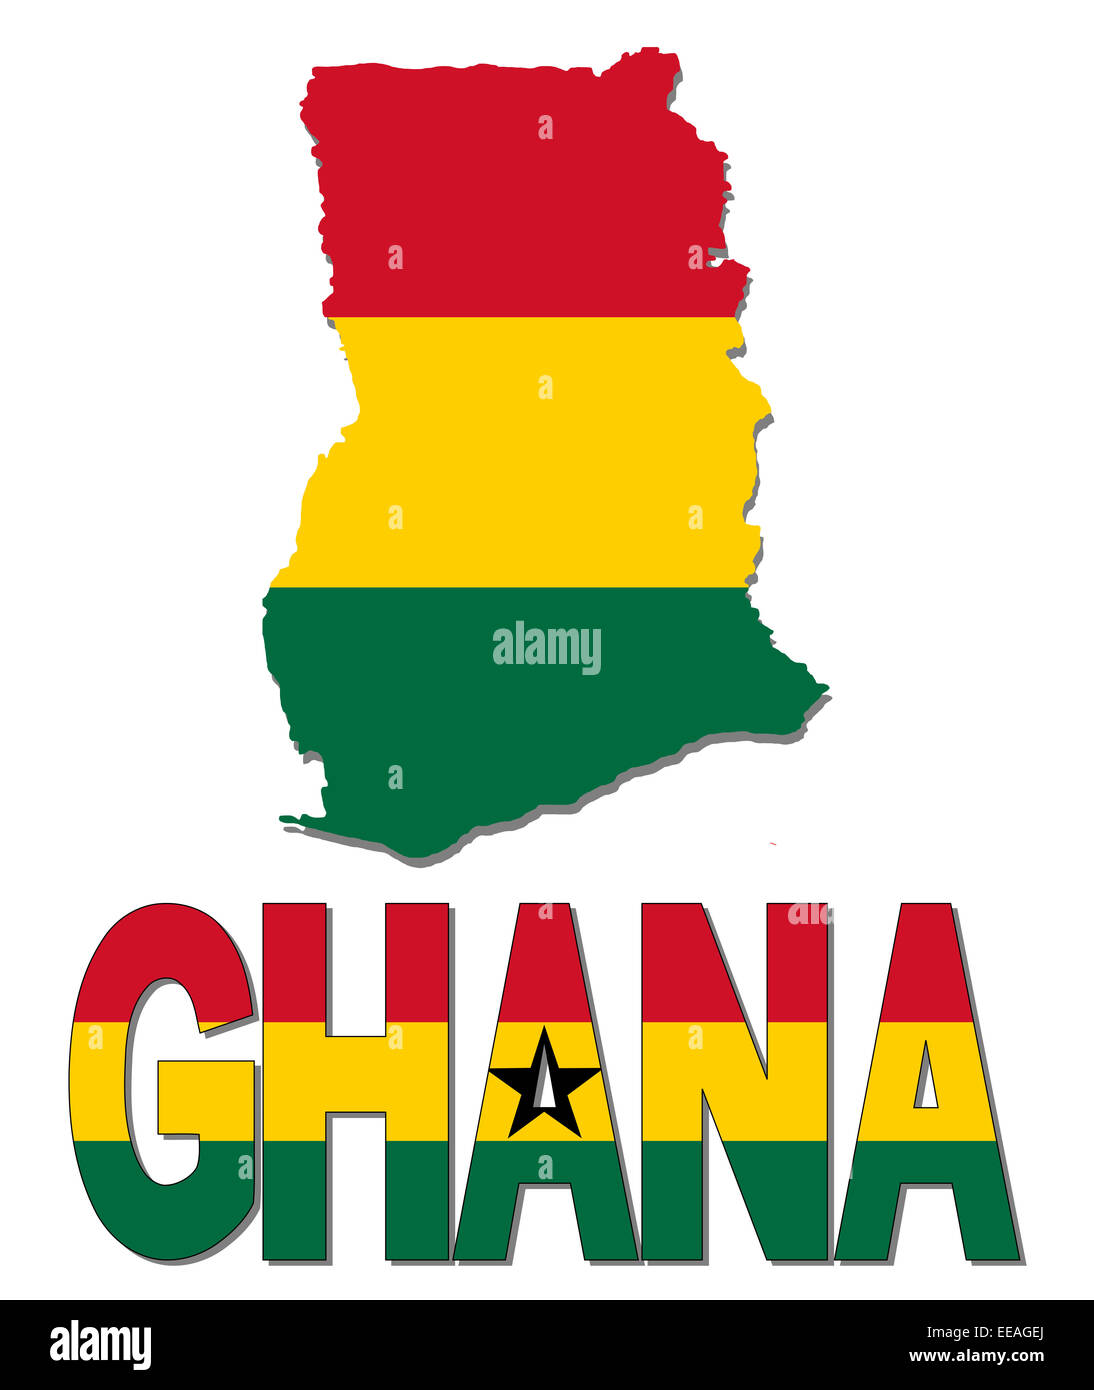 Ghana carte drapeau texte et illustration Banque D'Images